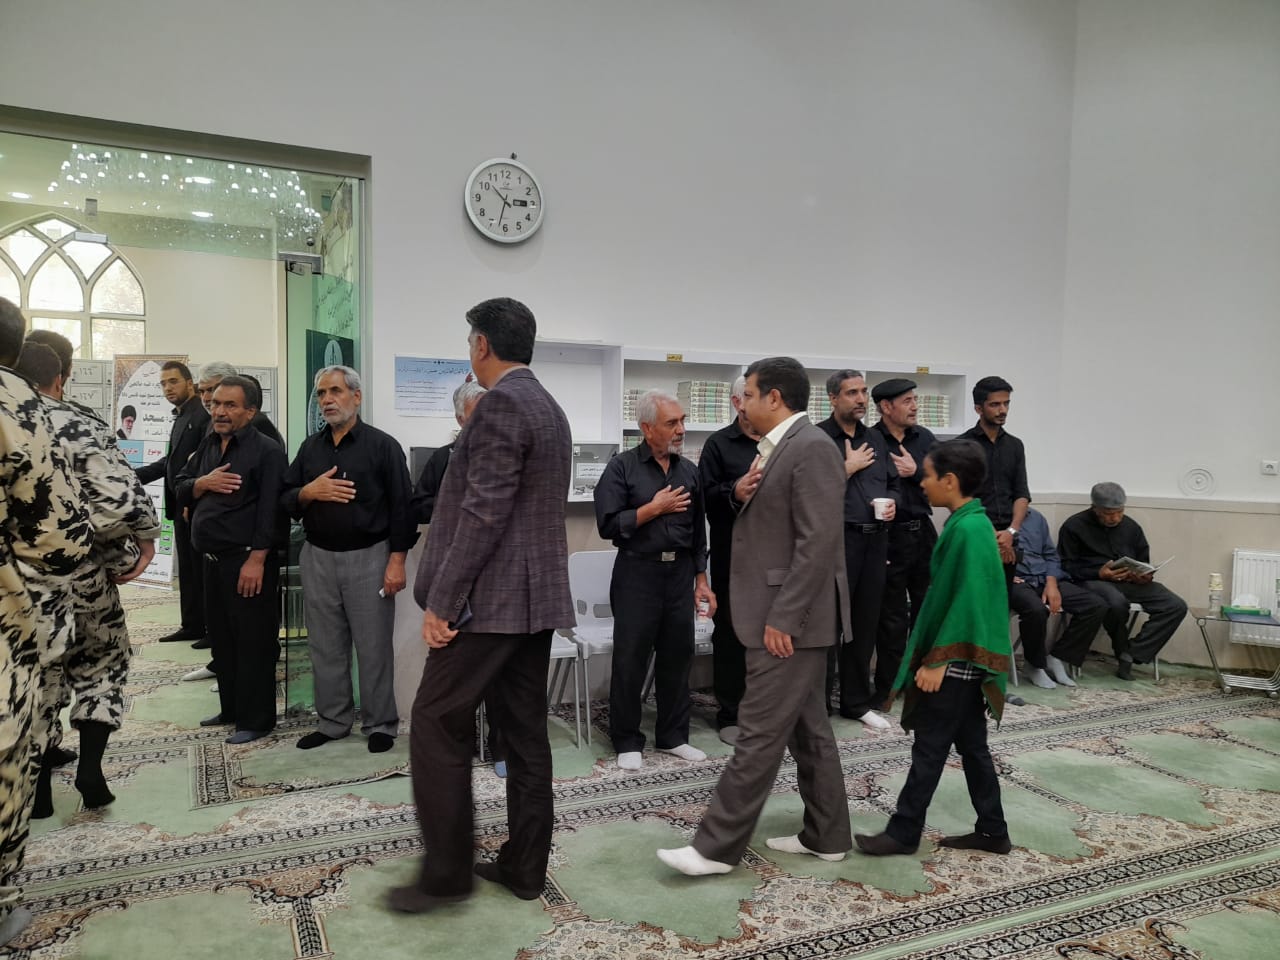 مراسم گرامیداشت شهید مدافع طبیعت جواد غلامی طبسی در مشهد برگزار شد